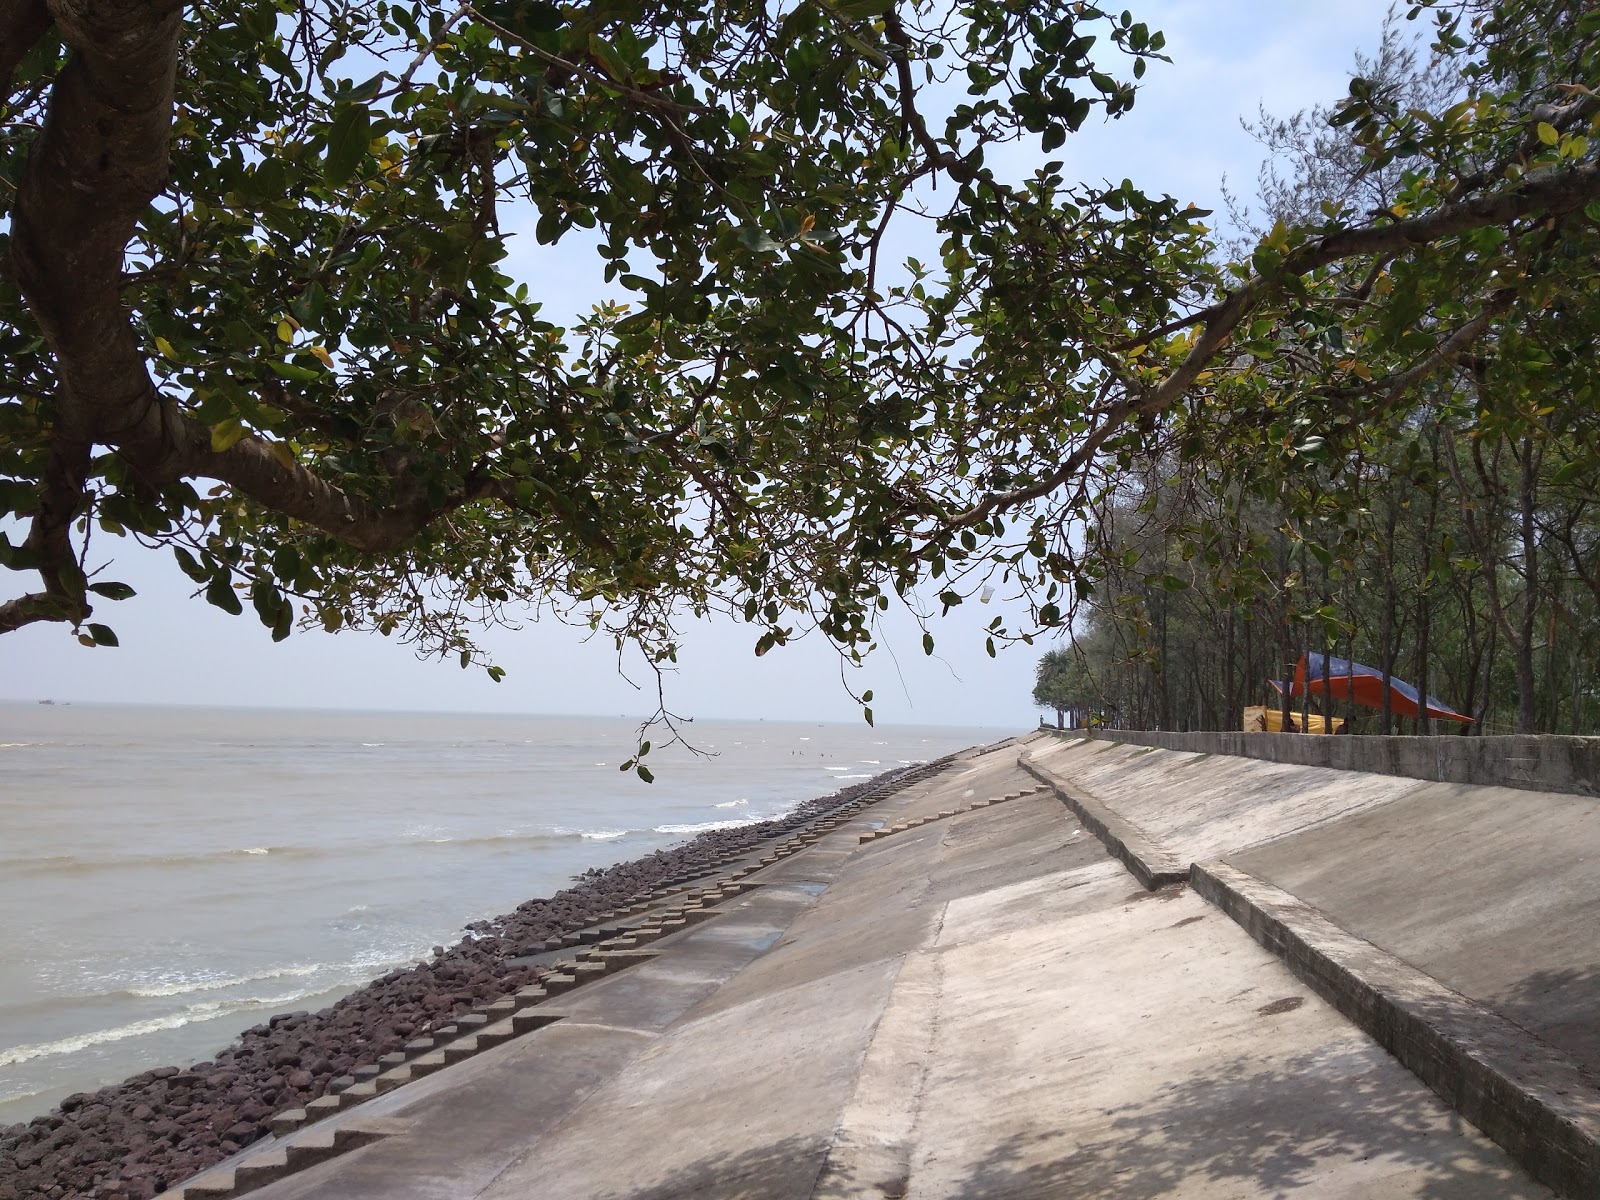 Fotografija Bankiput Sea Beach priljubljeno mesto med poznavalci sprostitve